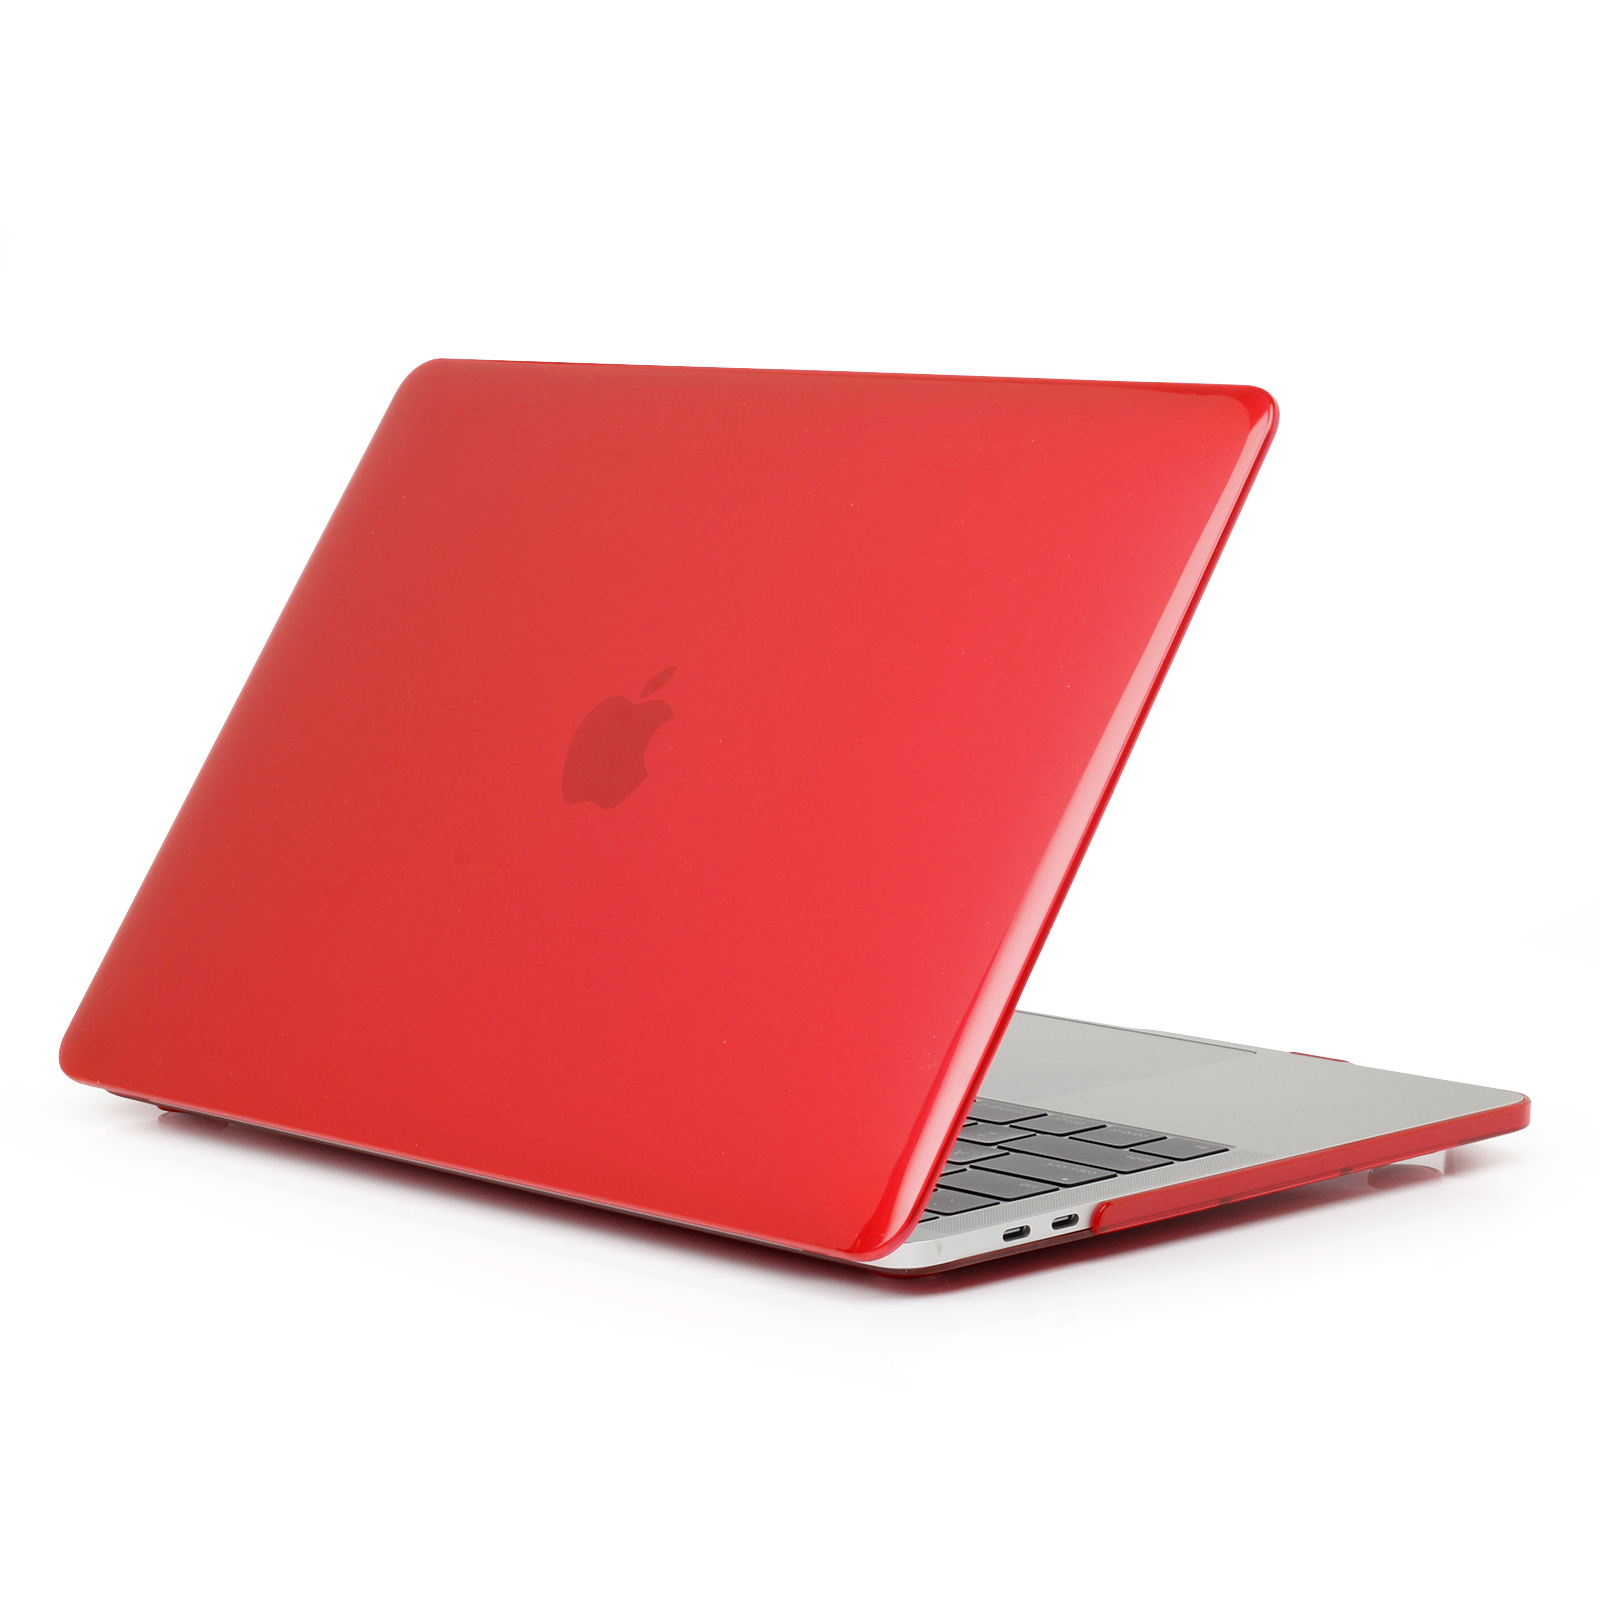 iPouzdro.cz pro MacBook Pro 15 (2016-2019) 2222221002153 červená